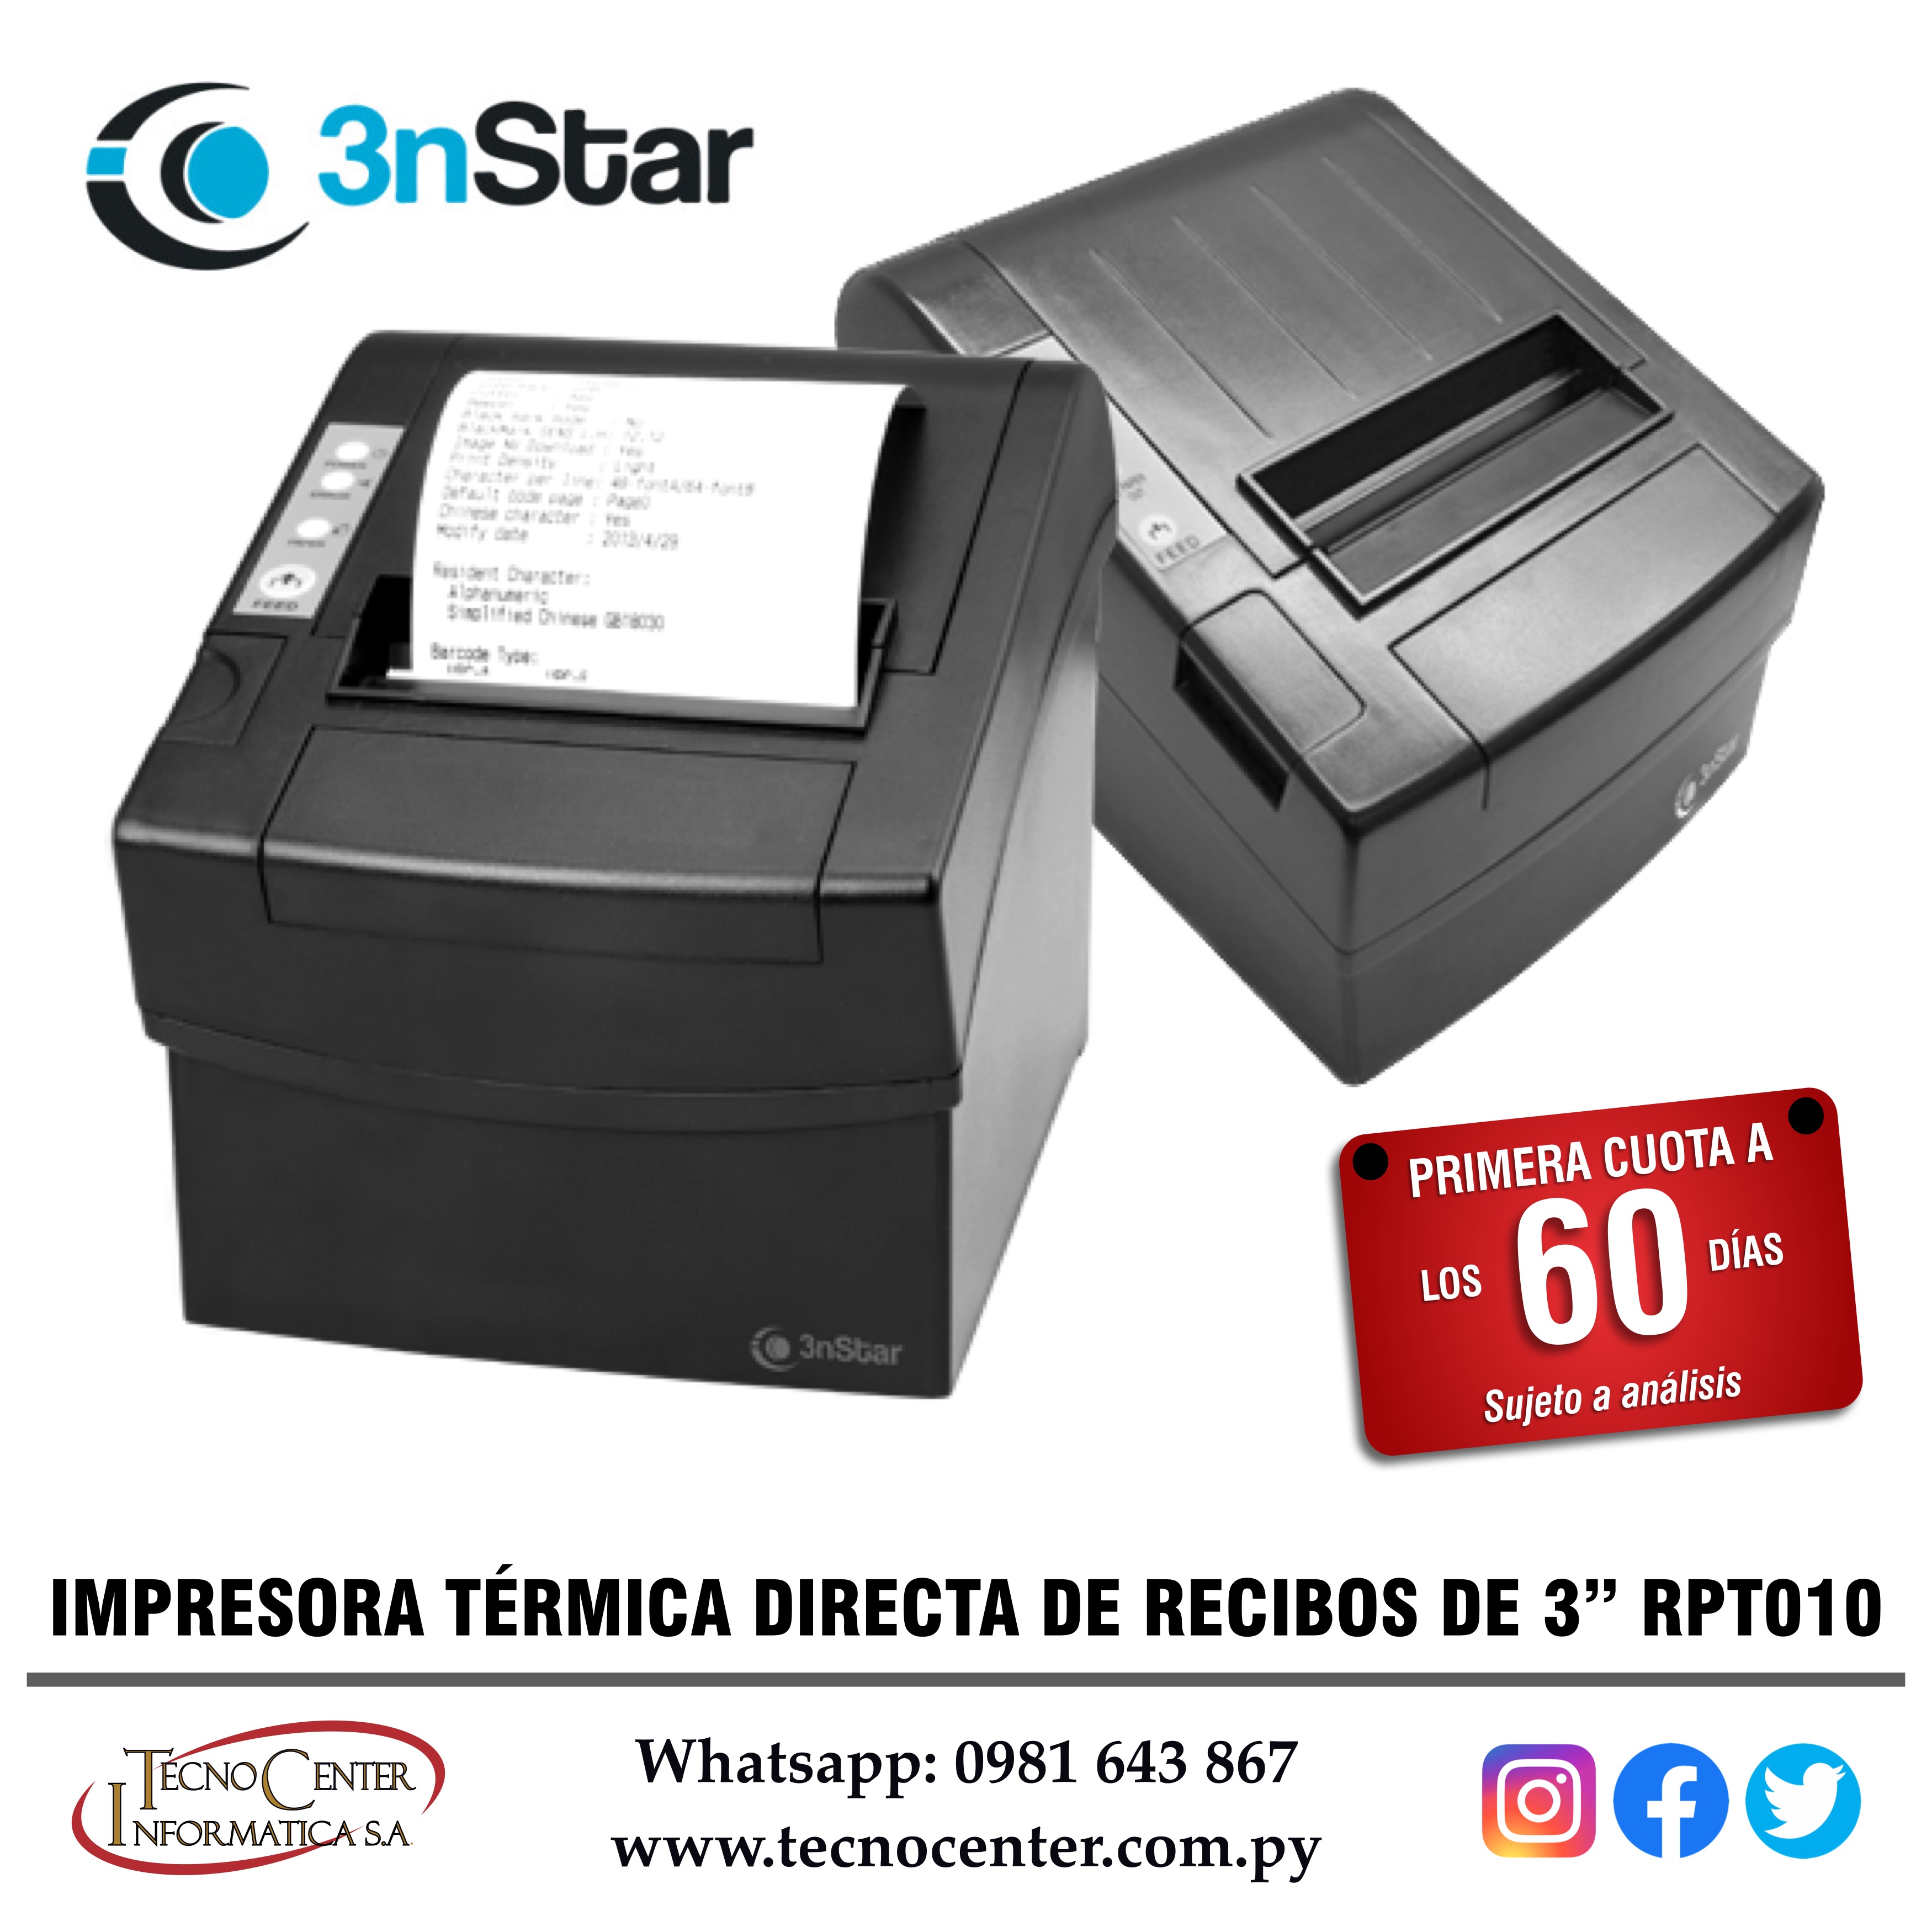 Impresora Térmica Directa 3nStar RPT010